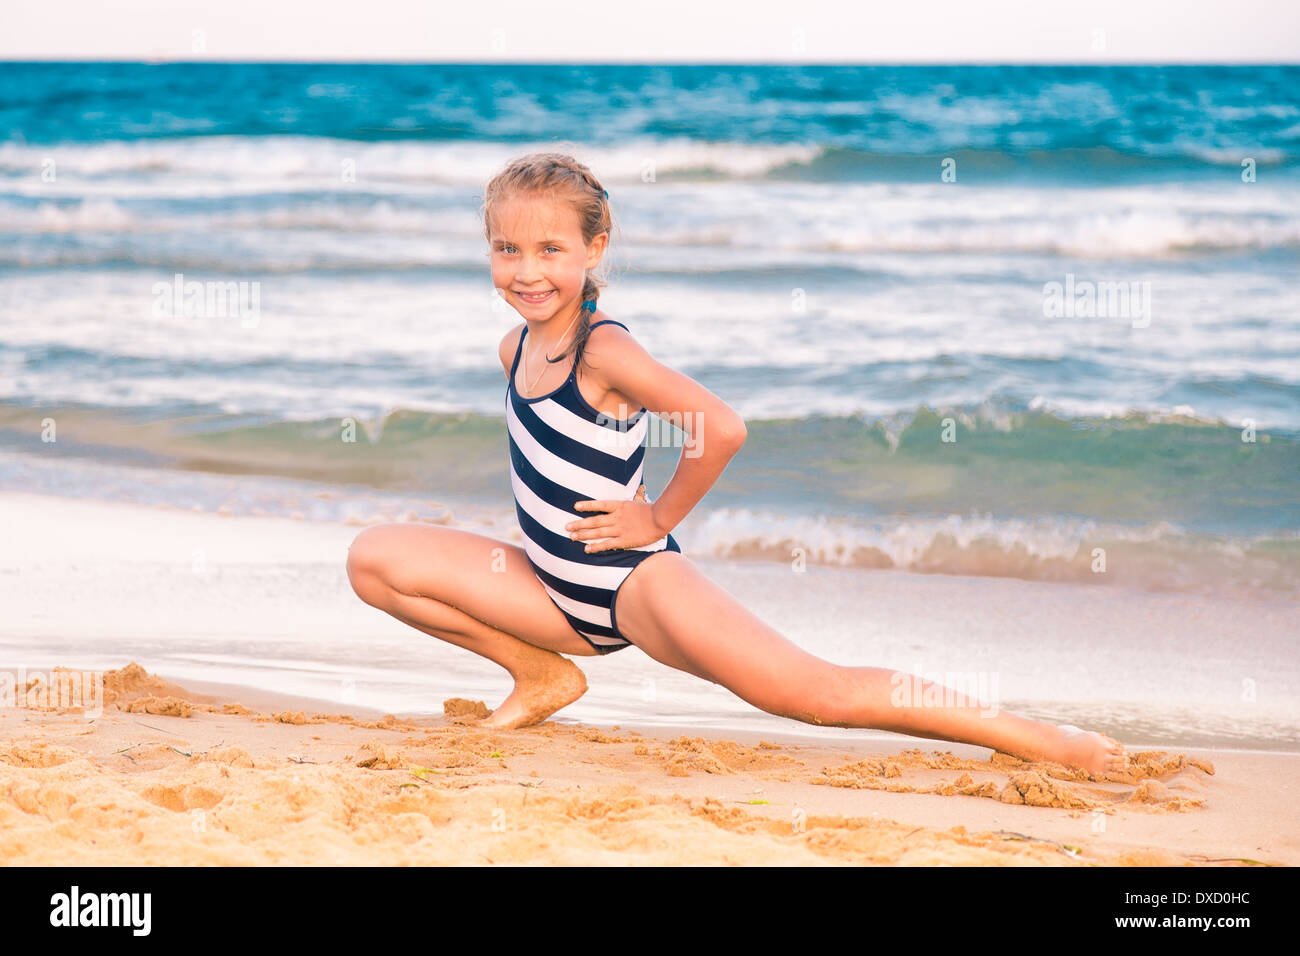 фото девочек 12 13 лет на пляже